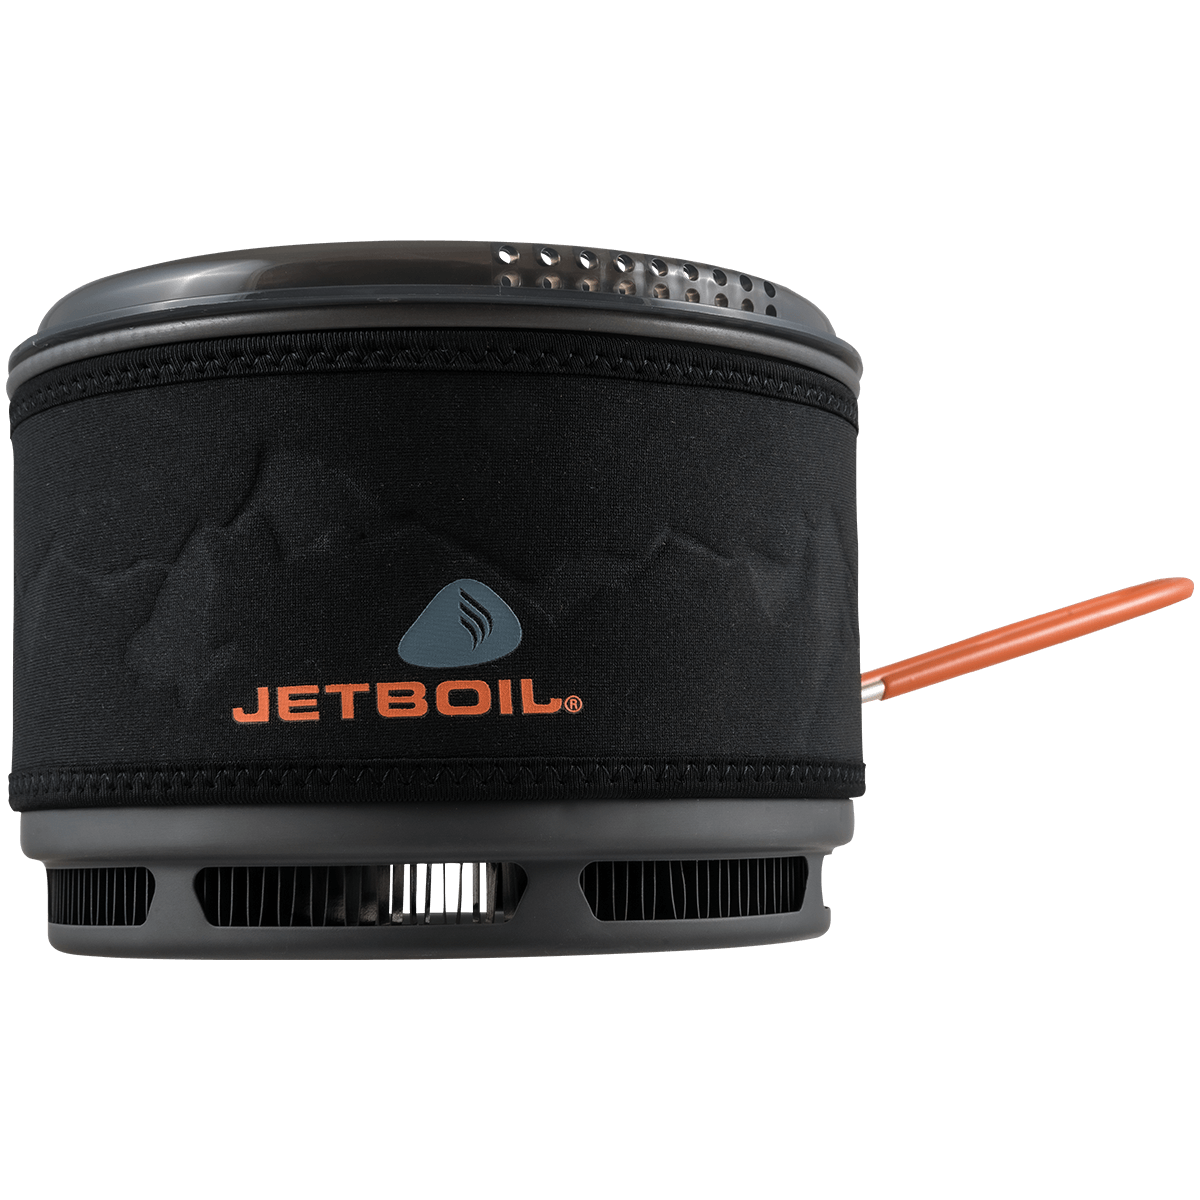 Jetboil 1.5L Ceramic Fluxring Cook Pot - Ascent Outdoors LLC